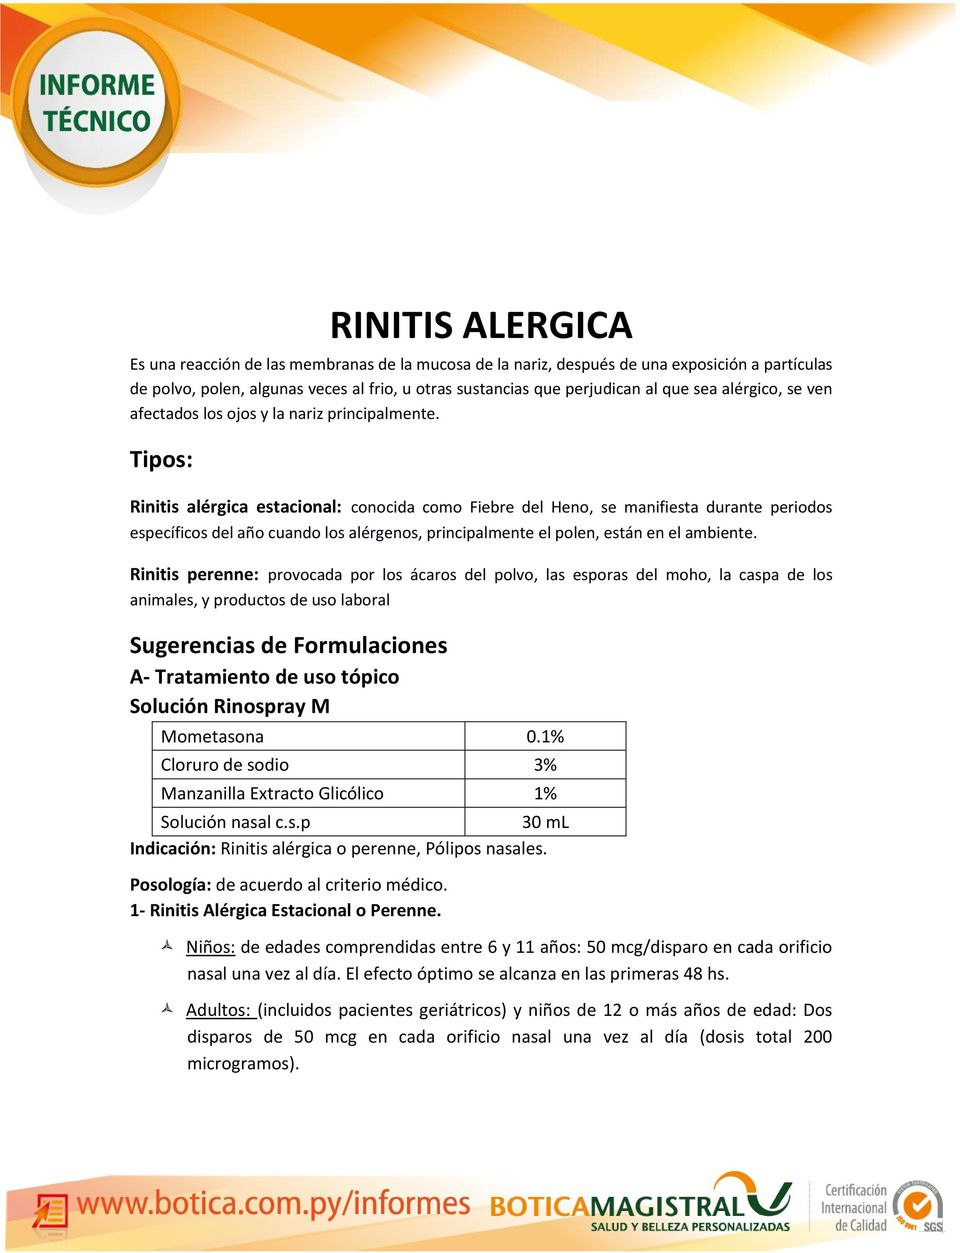 Tipos: Rinitis alérgica estacional: conocida como Fiebre del Heno, se manifiesta durante periodos específicos del año cuando los alérgenos, principalmente el polen, están en el ambiente.